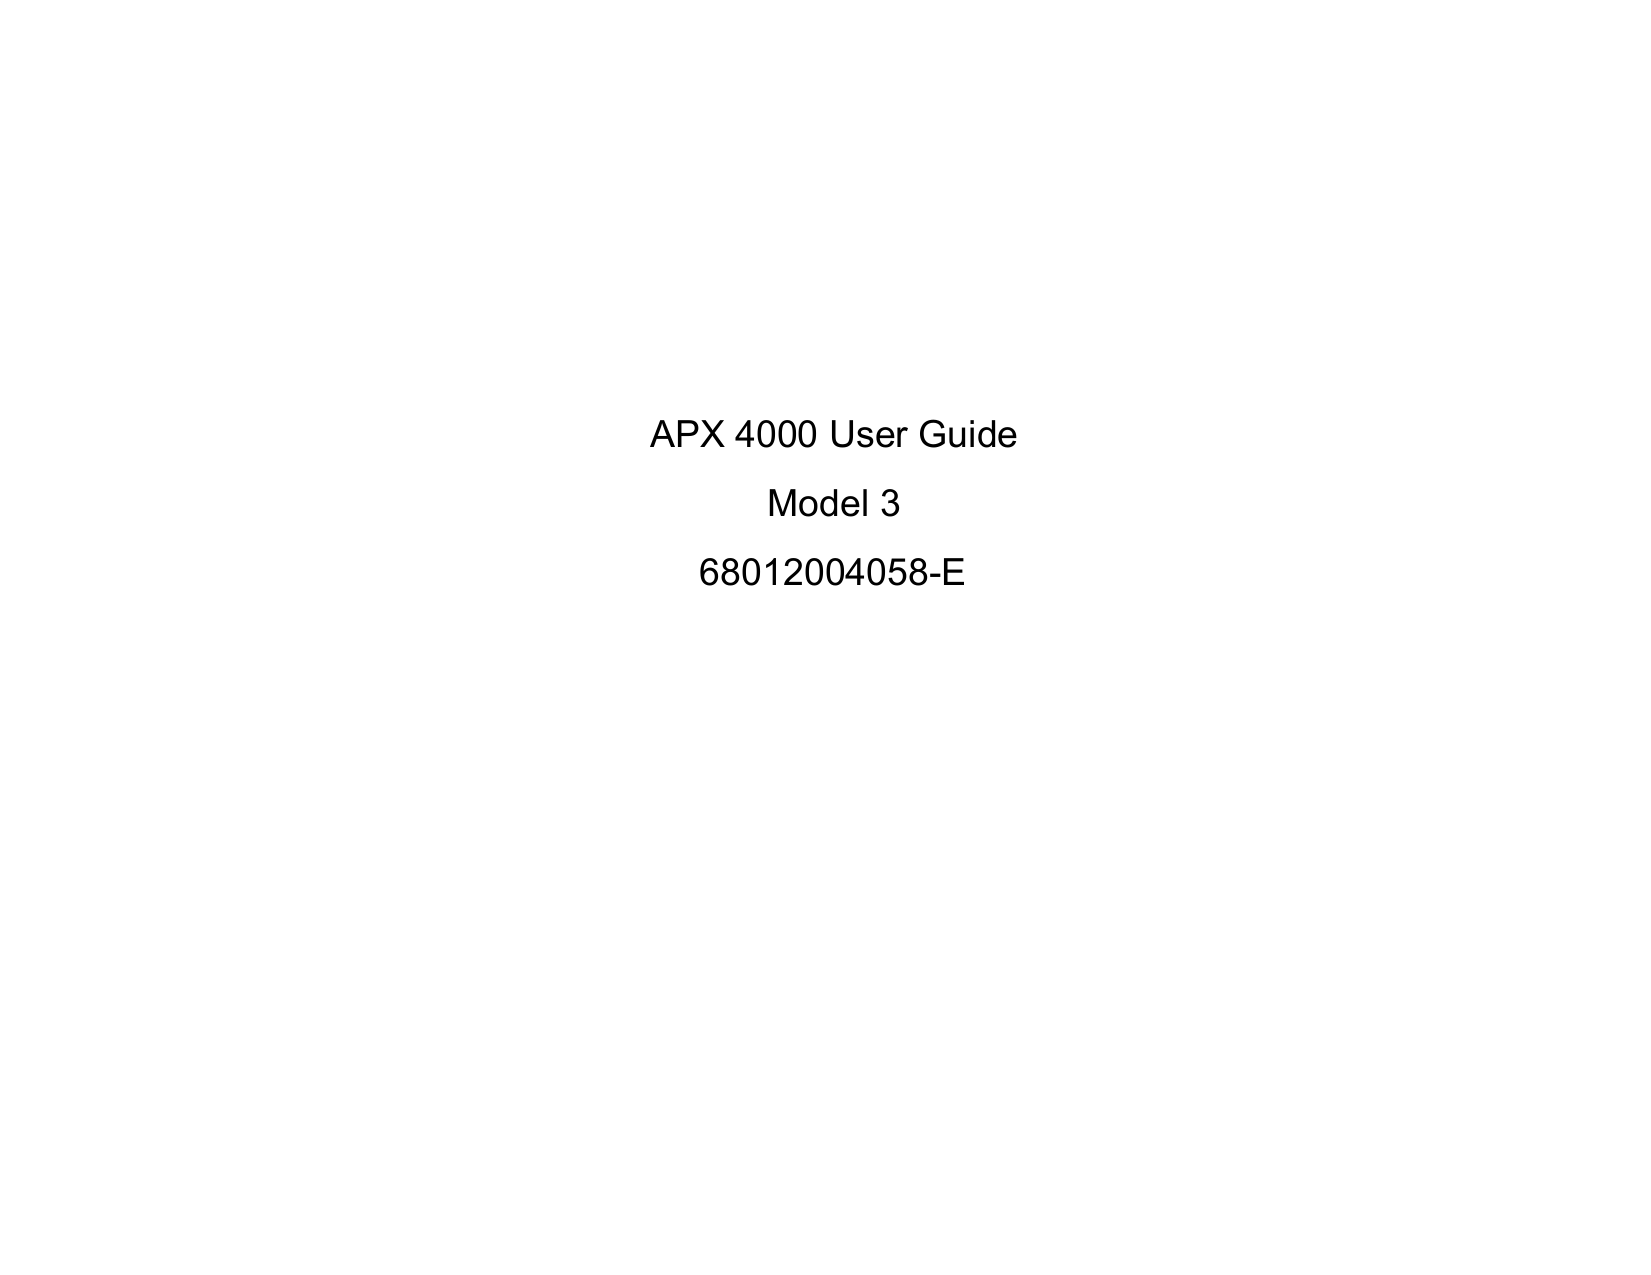 APX 4000 User GuideModel 3 68012004058-E